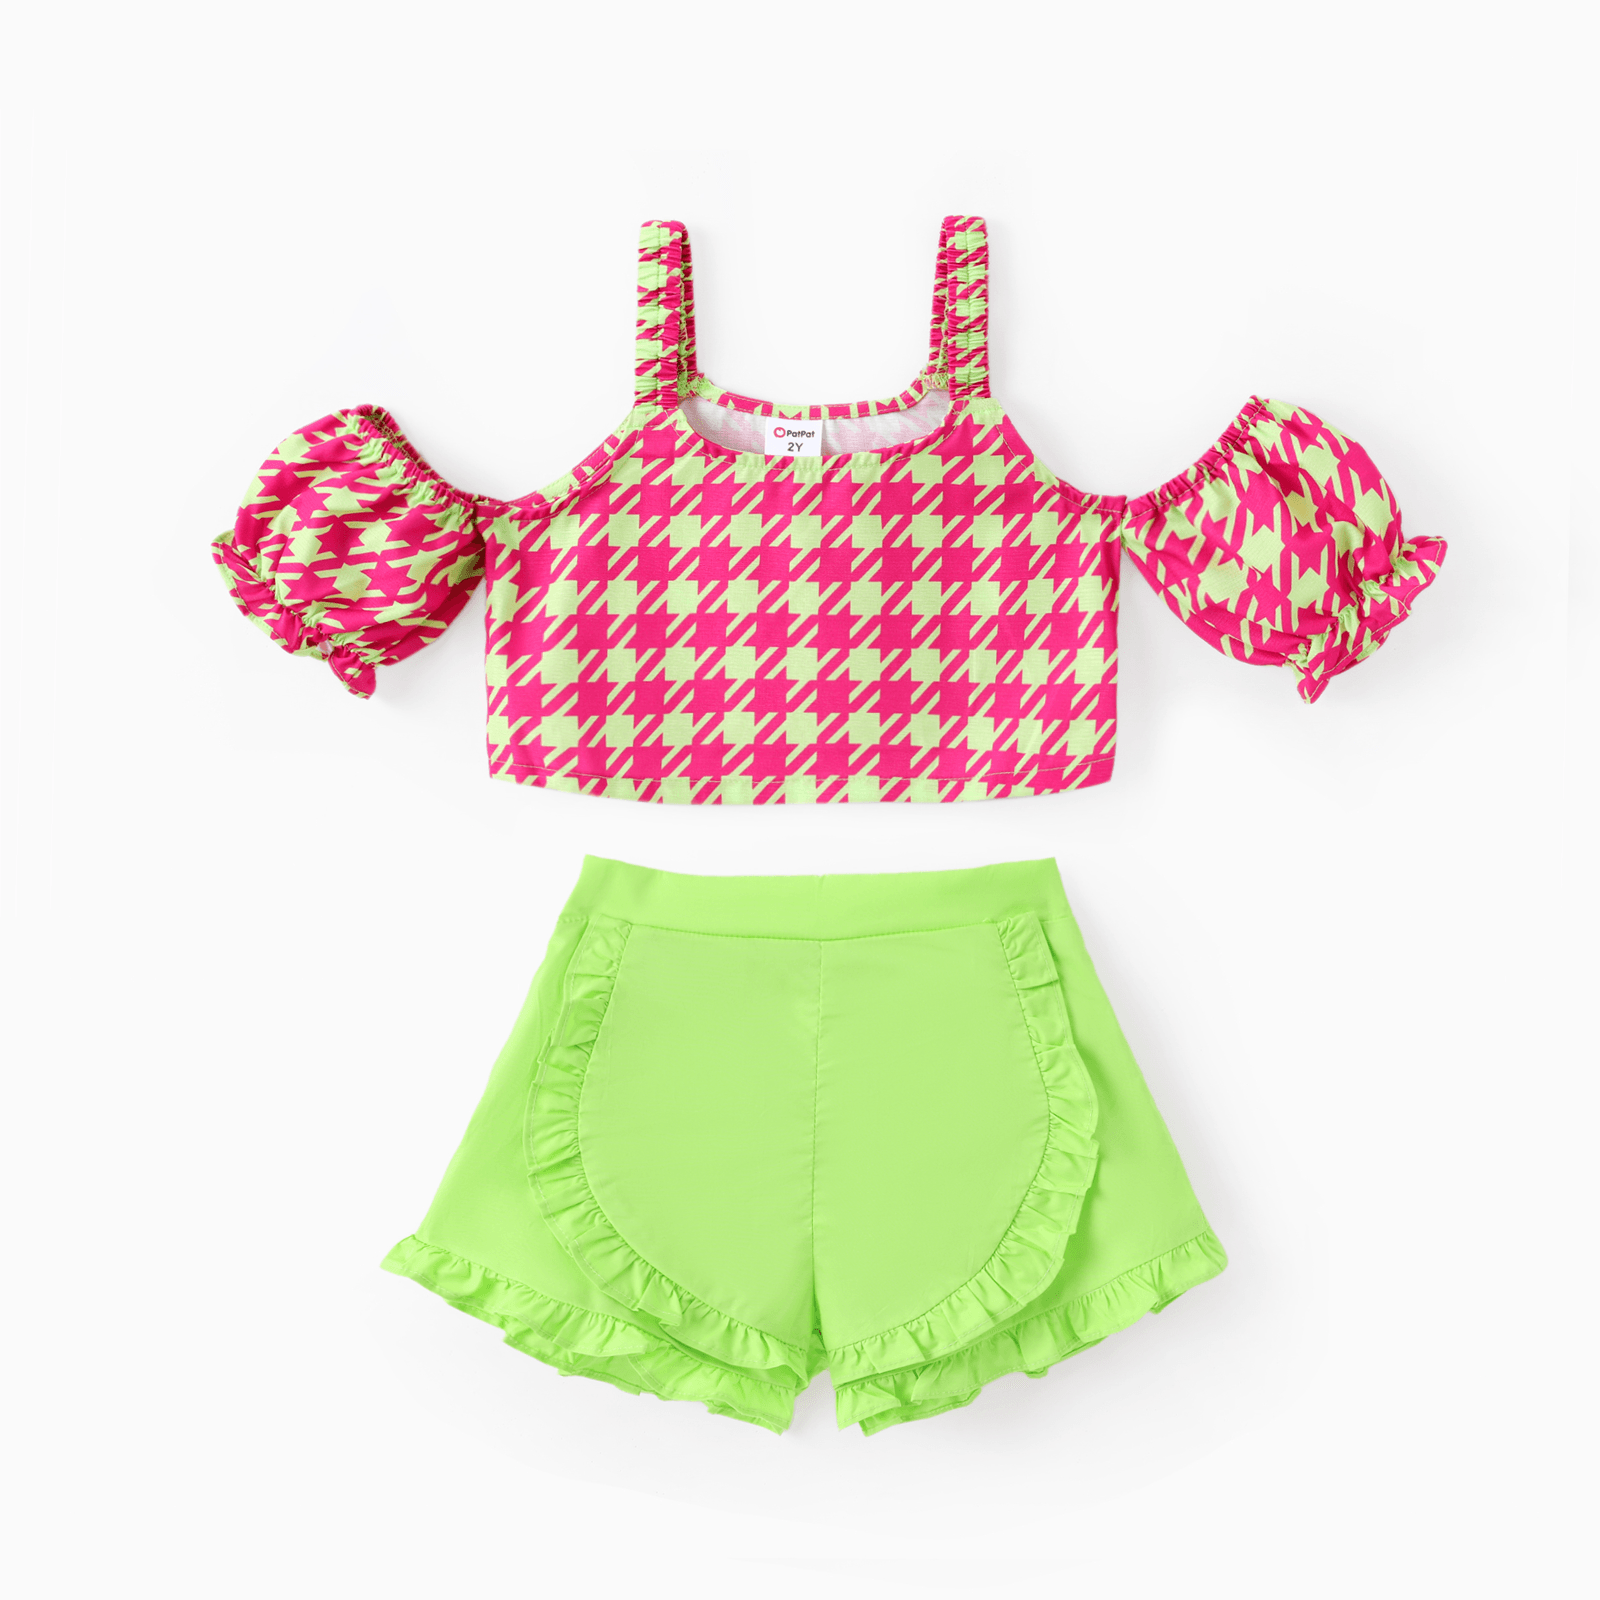 

Toddler Girl 2pcs Sweet Grid Print Top and Ruffled Shorts Set